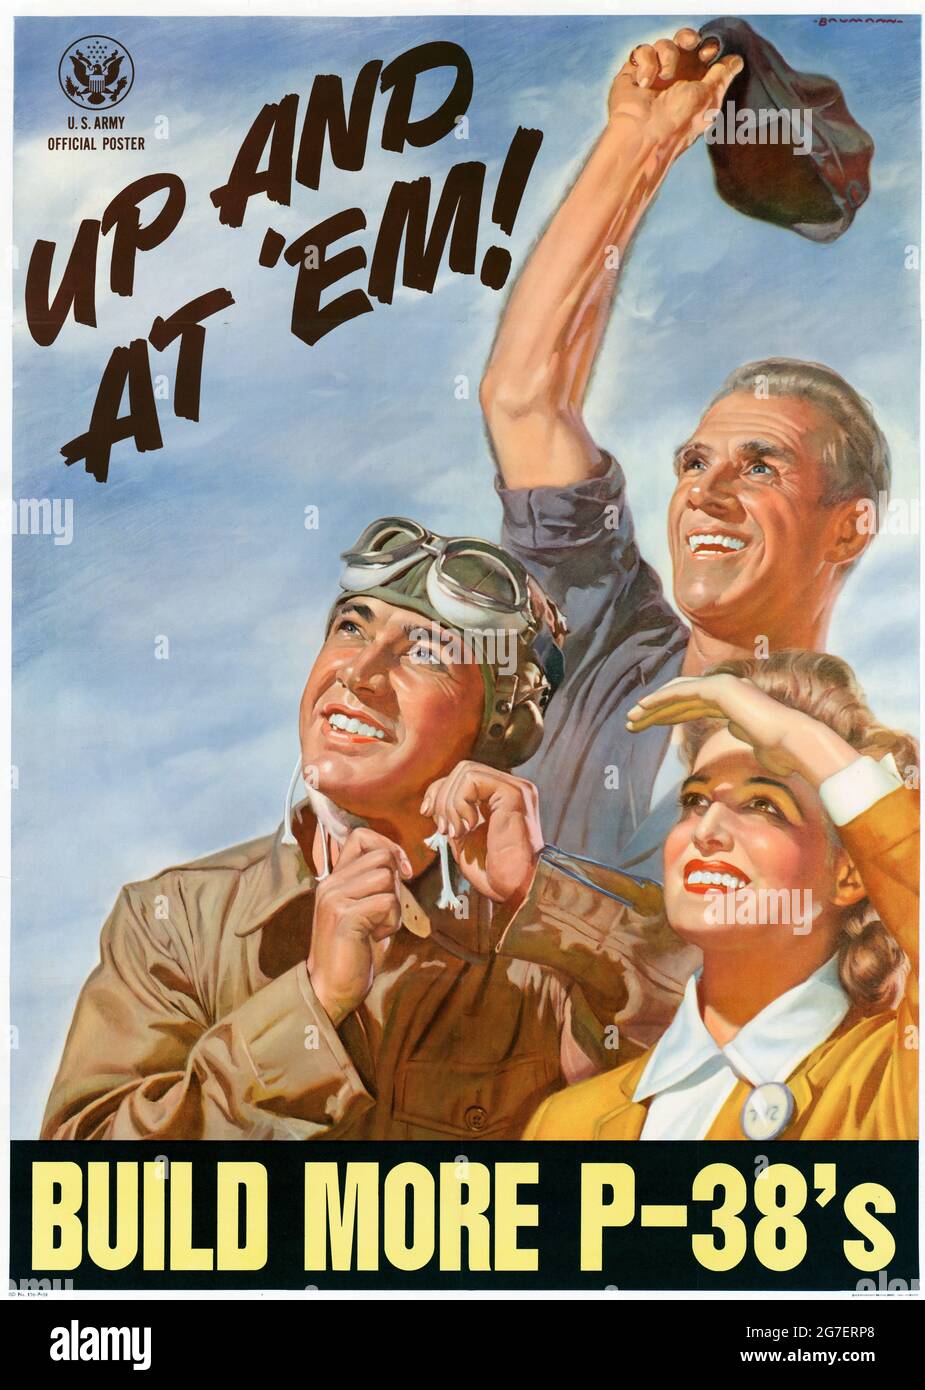 Up and at 'em - construire plus P-38s - affiche de la Maison américaine de la Seconde Guerre mondiale Banque D'Images